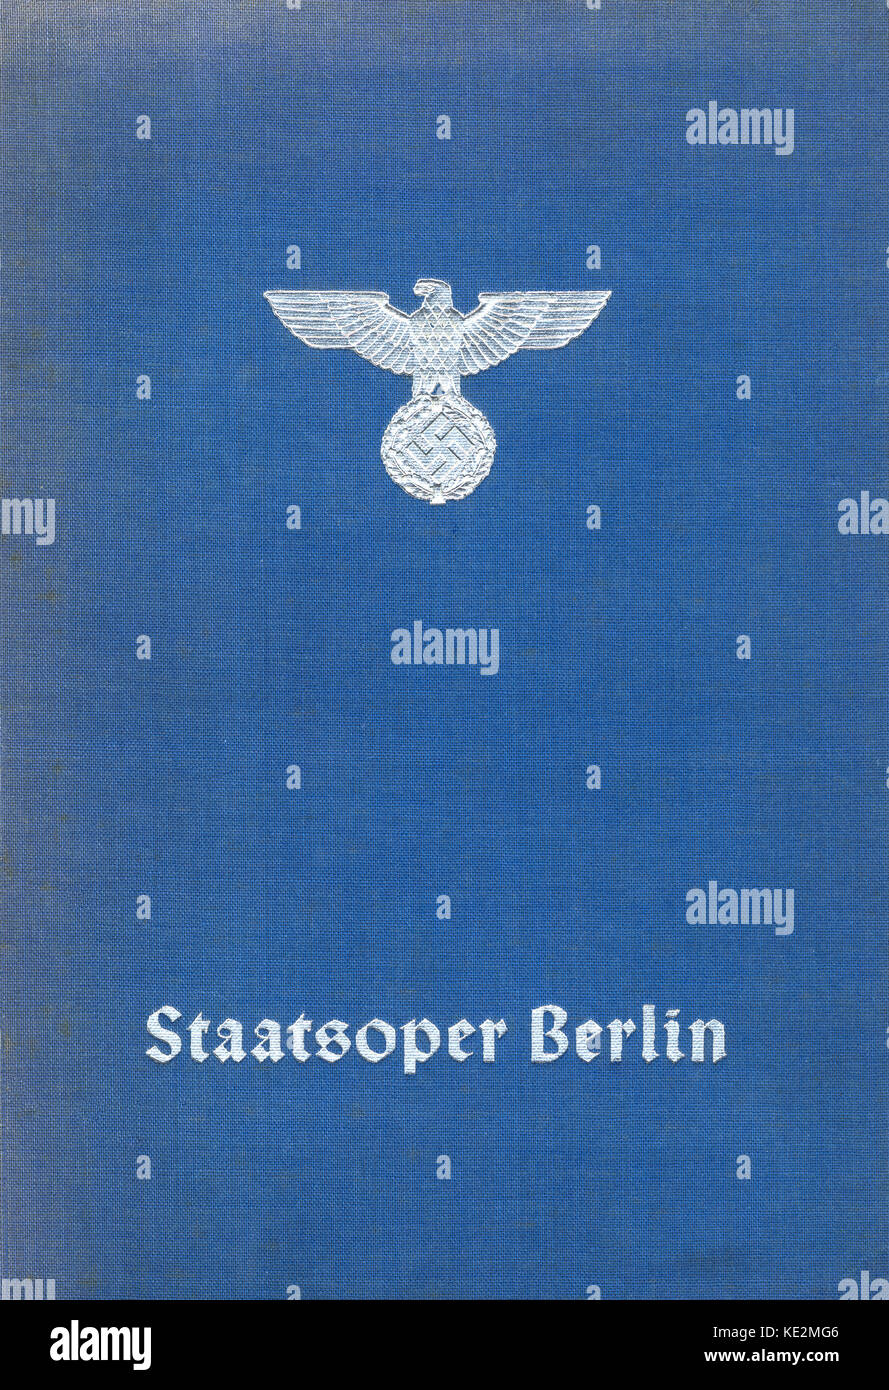 Ère nazie couverture d'un livre sur le Staatsoper de Berlin (Berlin). Publié en 1939 par Max Beck Verlag à Leipzig. Avec l'aigle et croix gammée. Banque D'Images